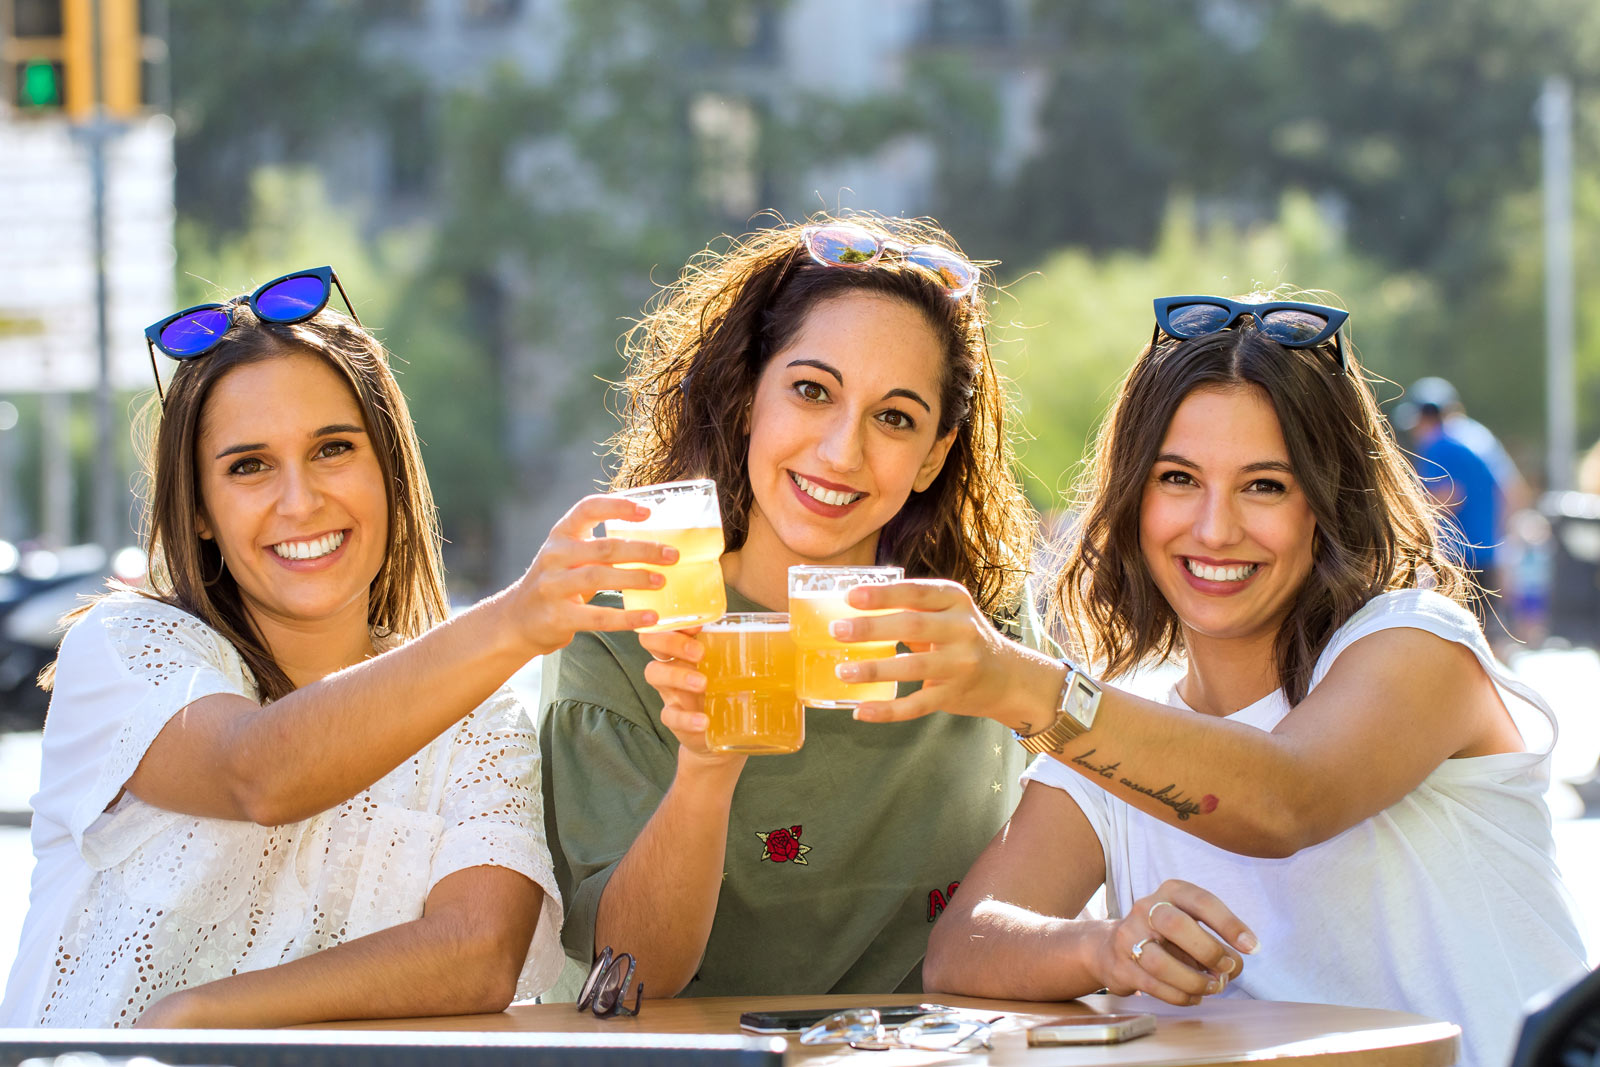 Drei junge Frauen prosten sich mit Bier zu.